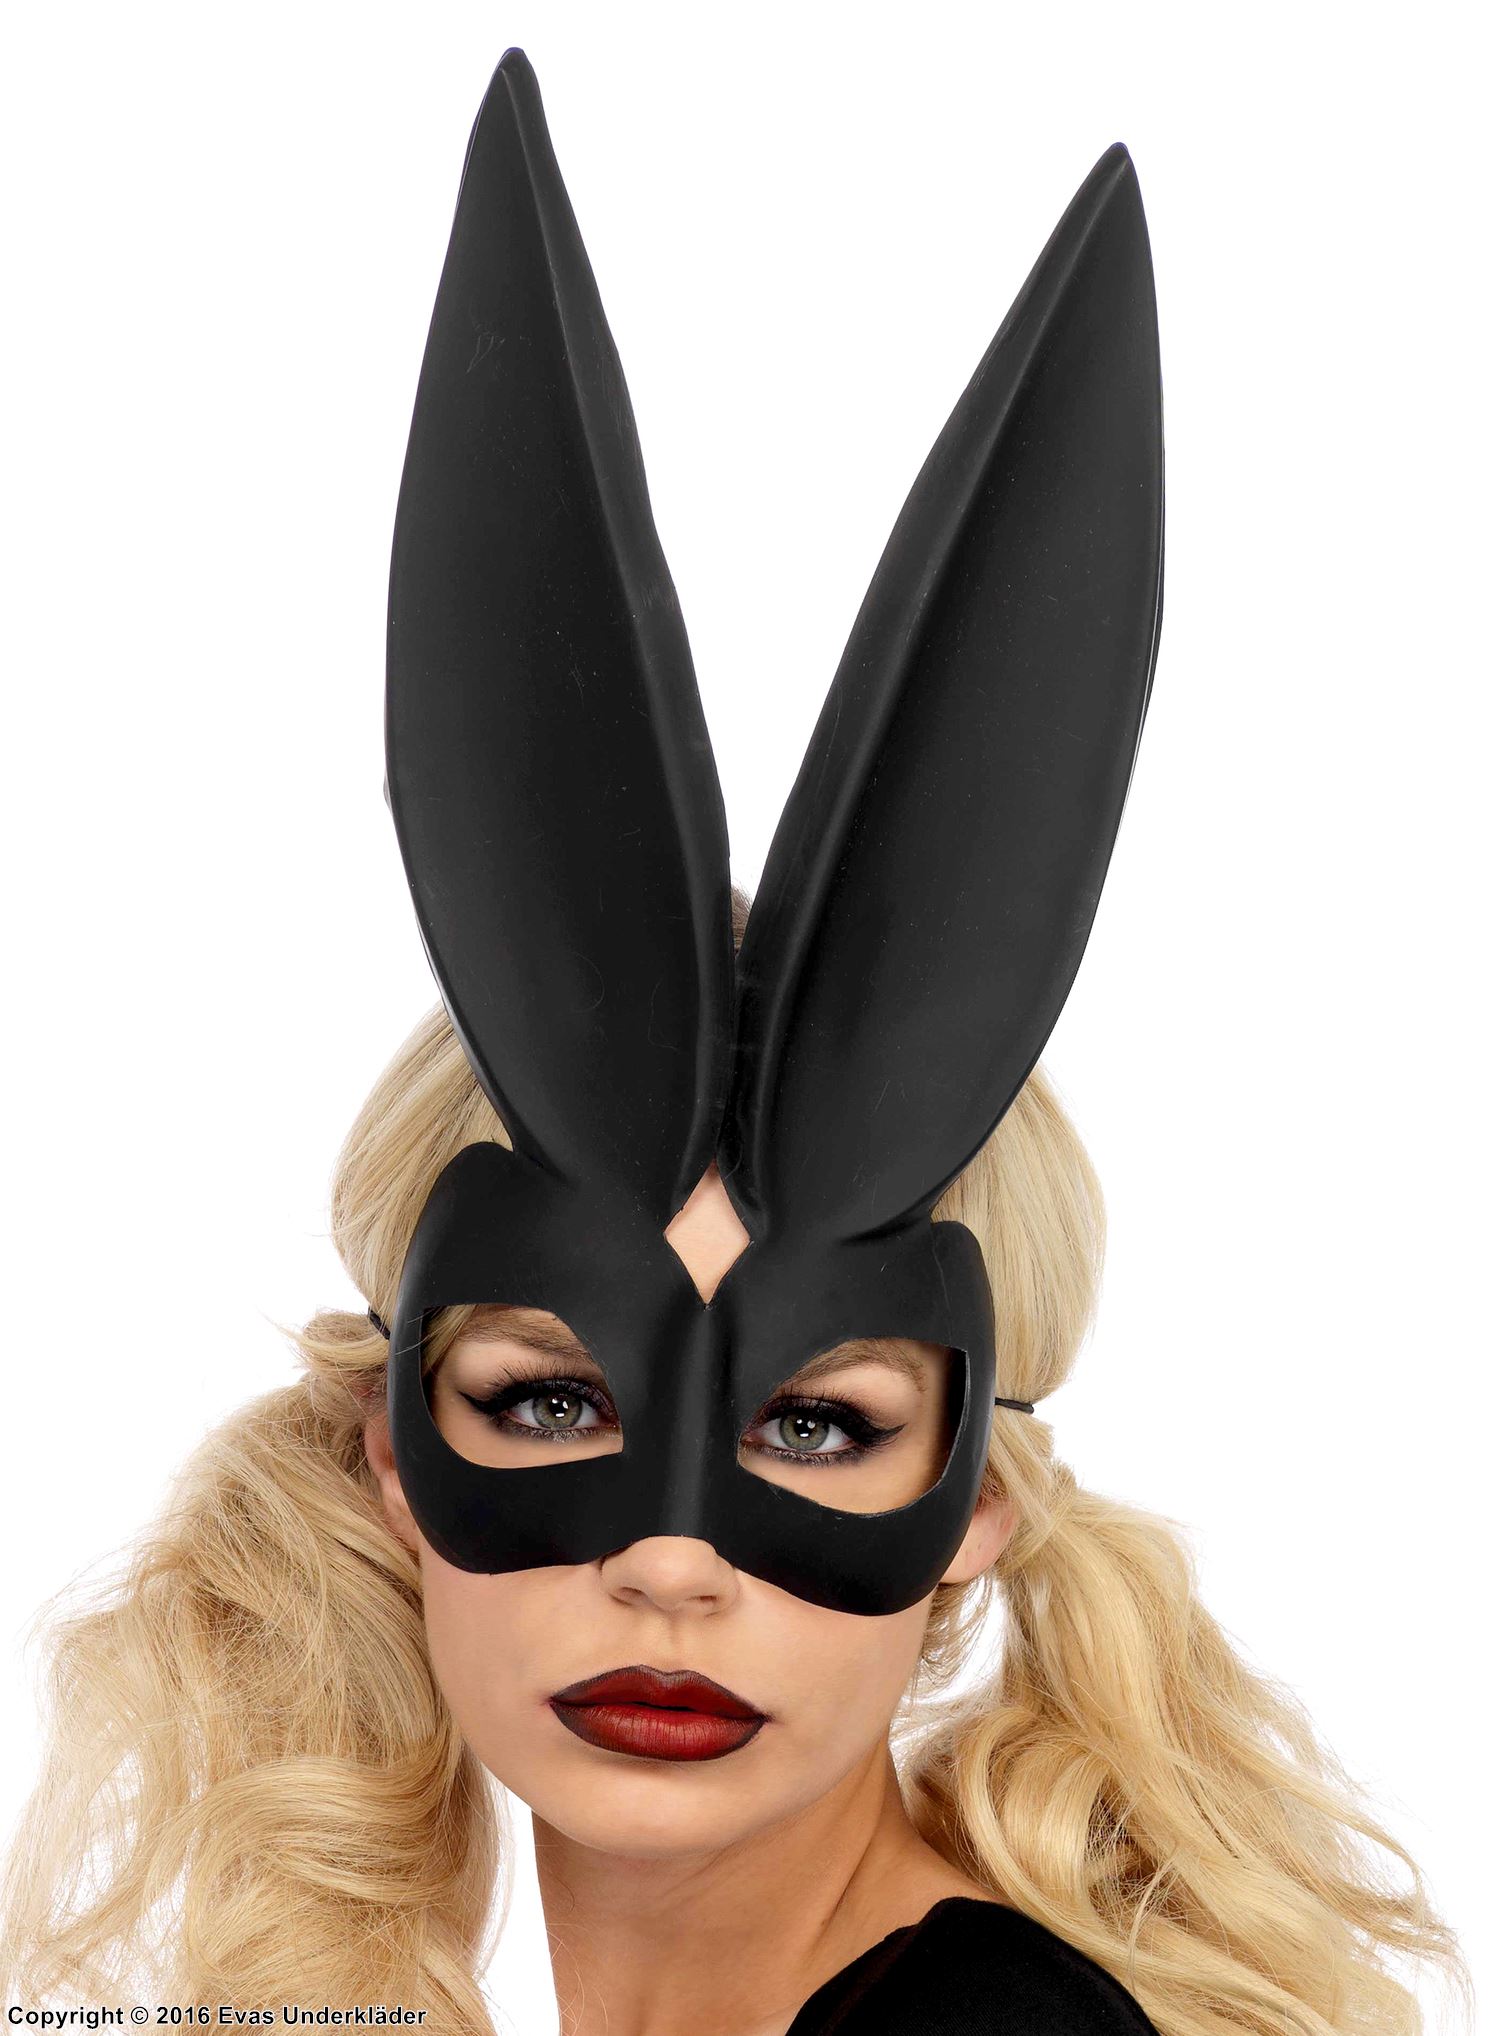 Rabbit, costume mask, big ears